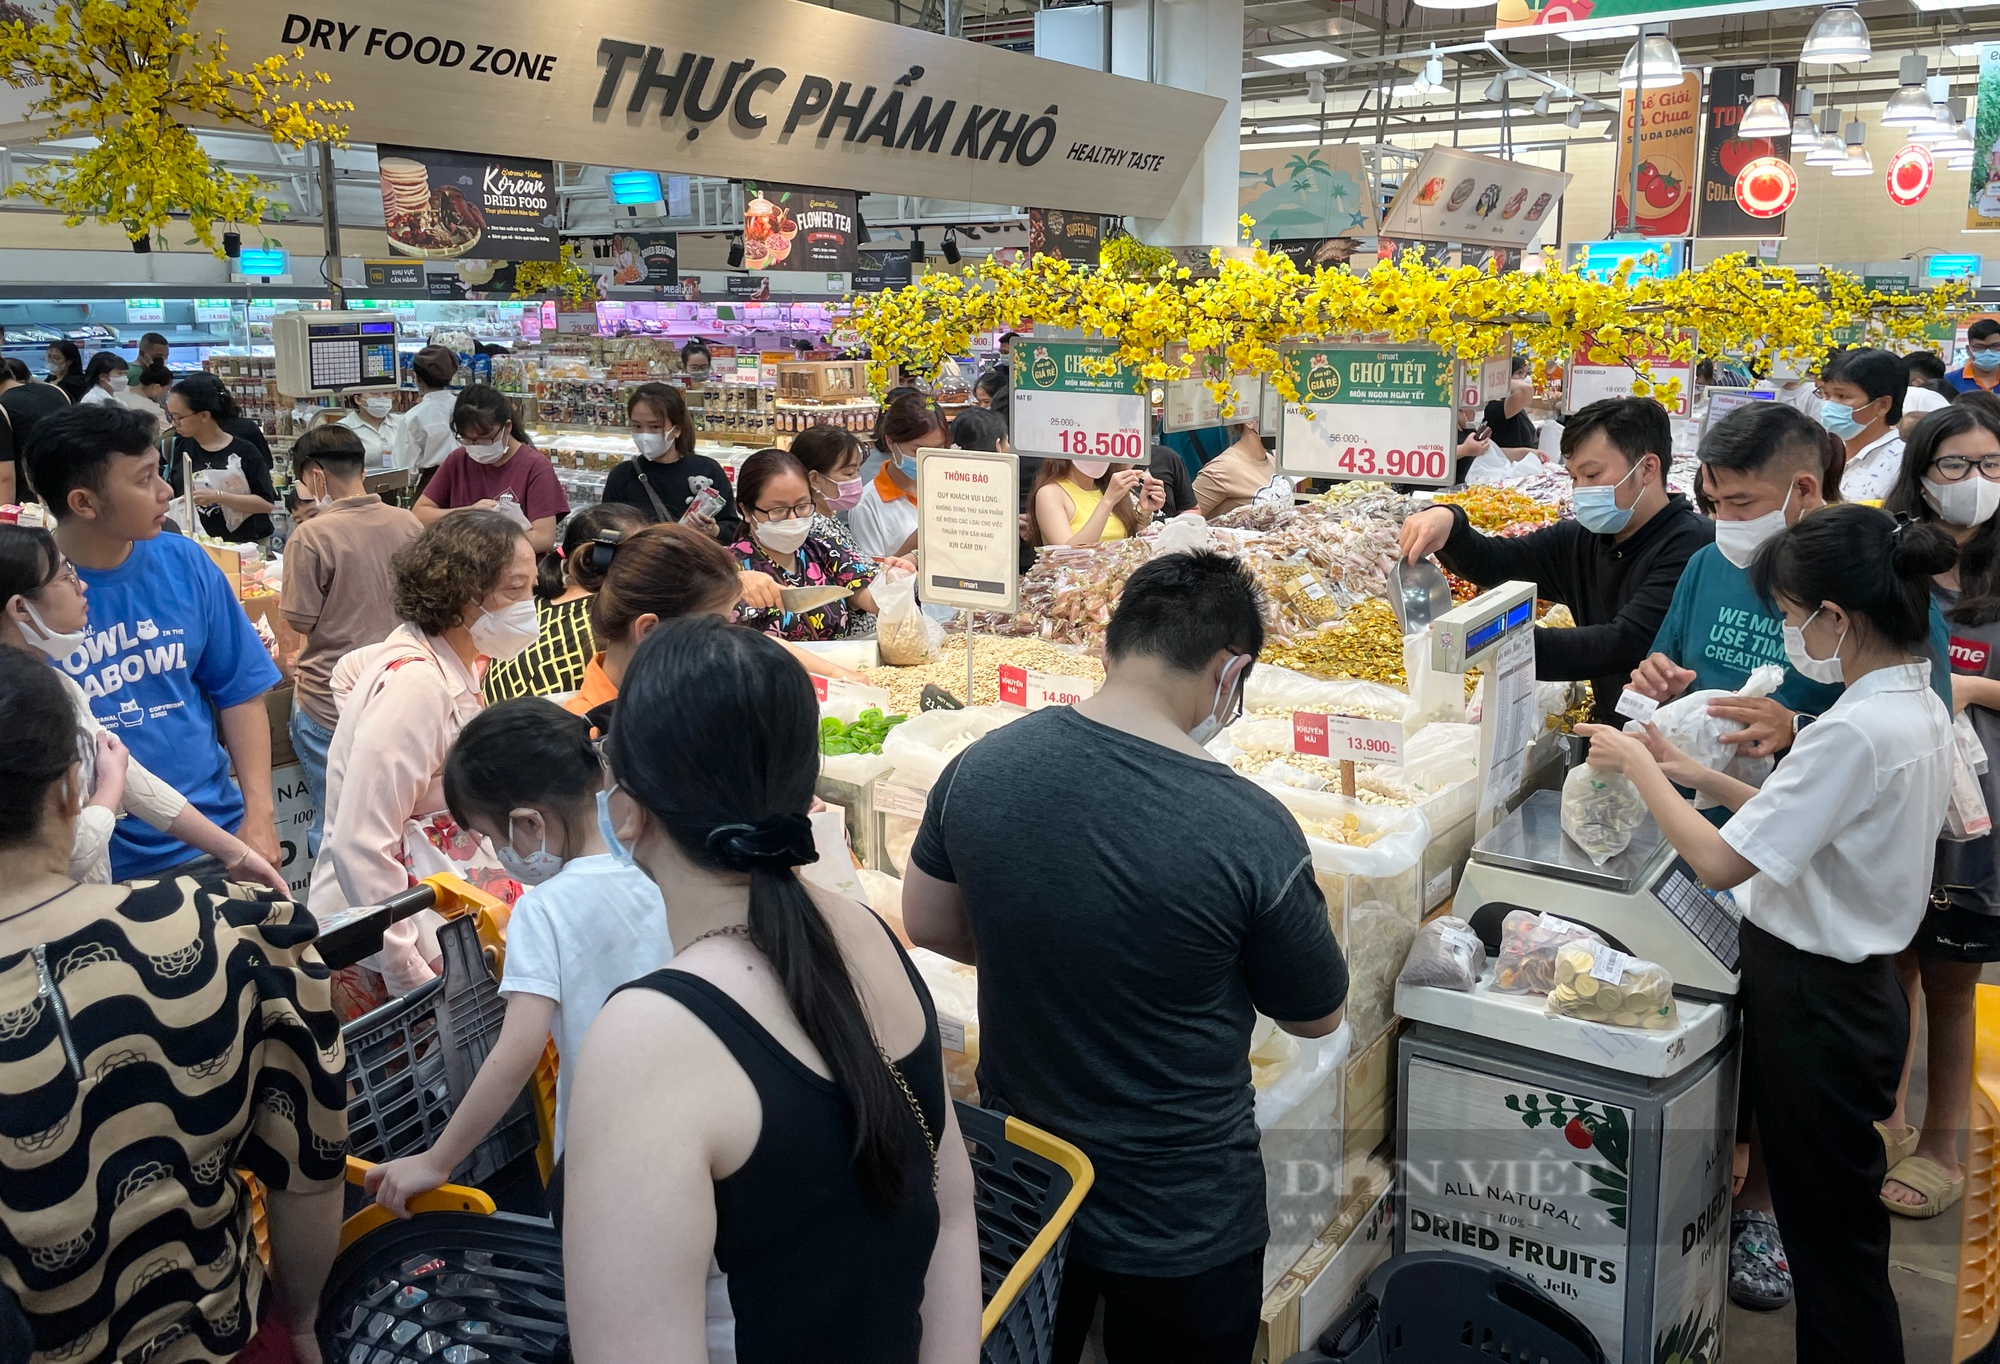 Bắt đầu được nghỉ, người Sài Gòn đua sắm Tết, siêu thị tuyên bố mở cửa tới nửa đêm - Ảnh 1.